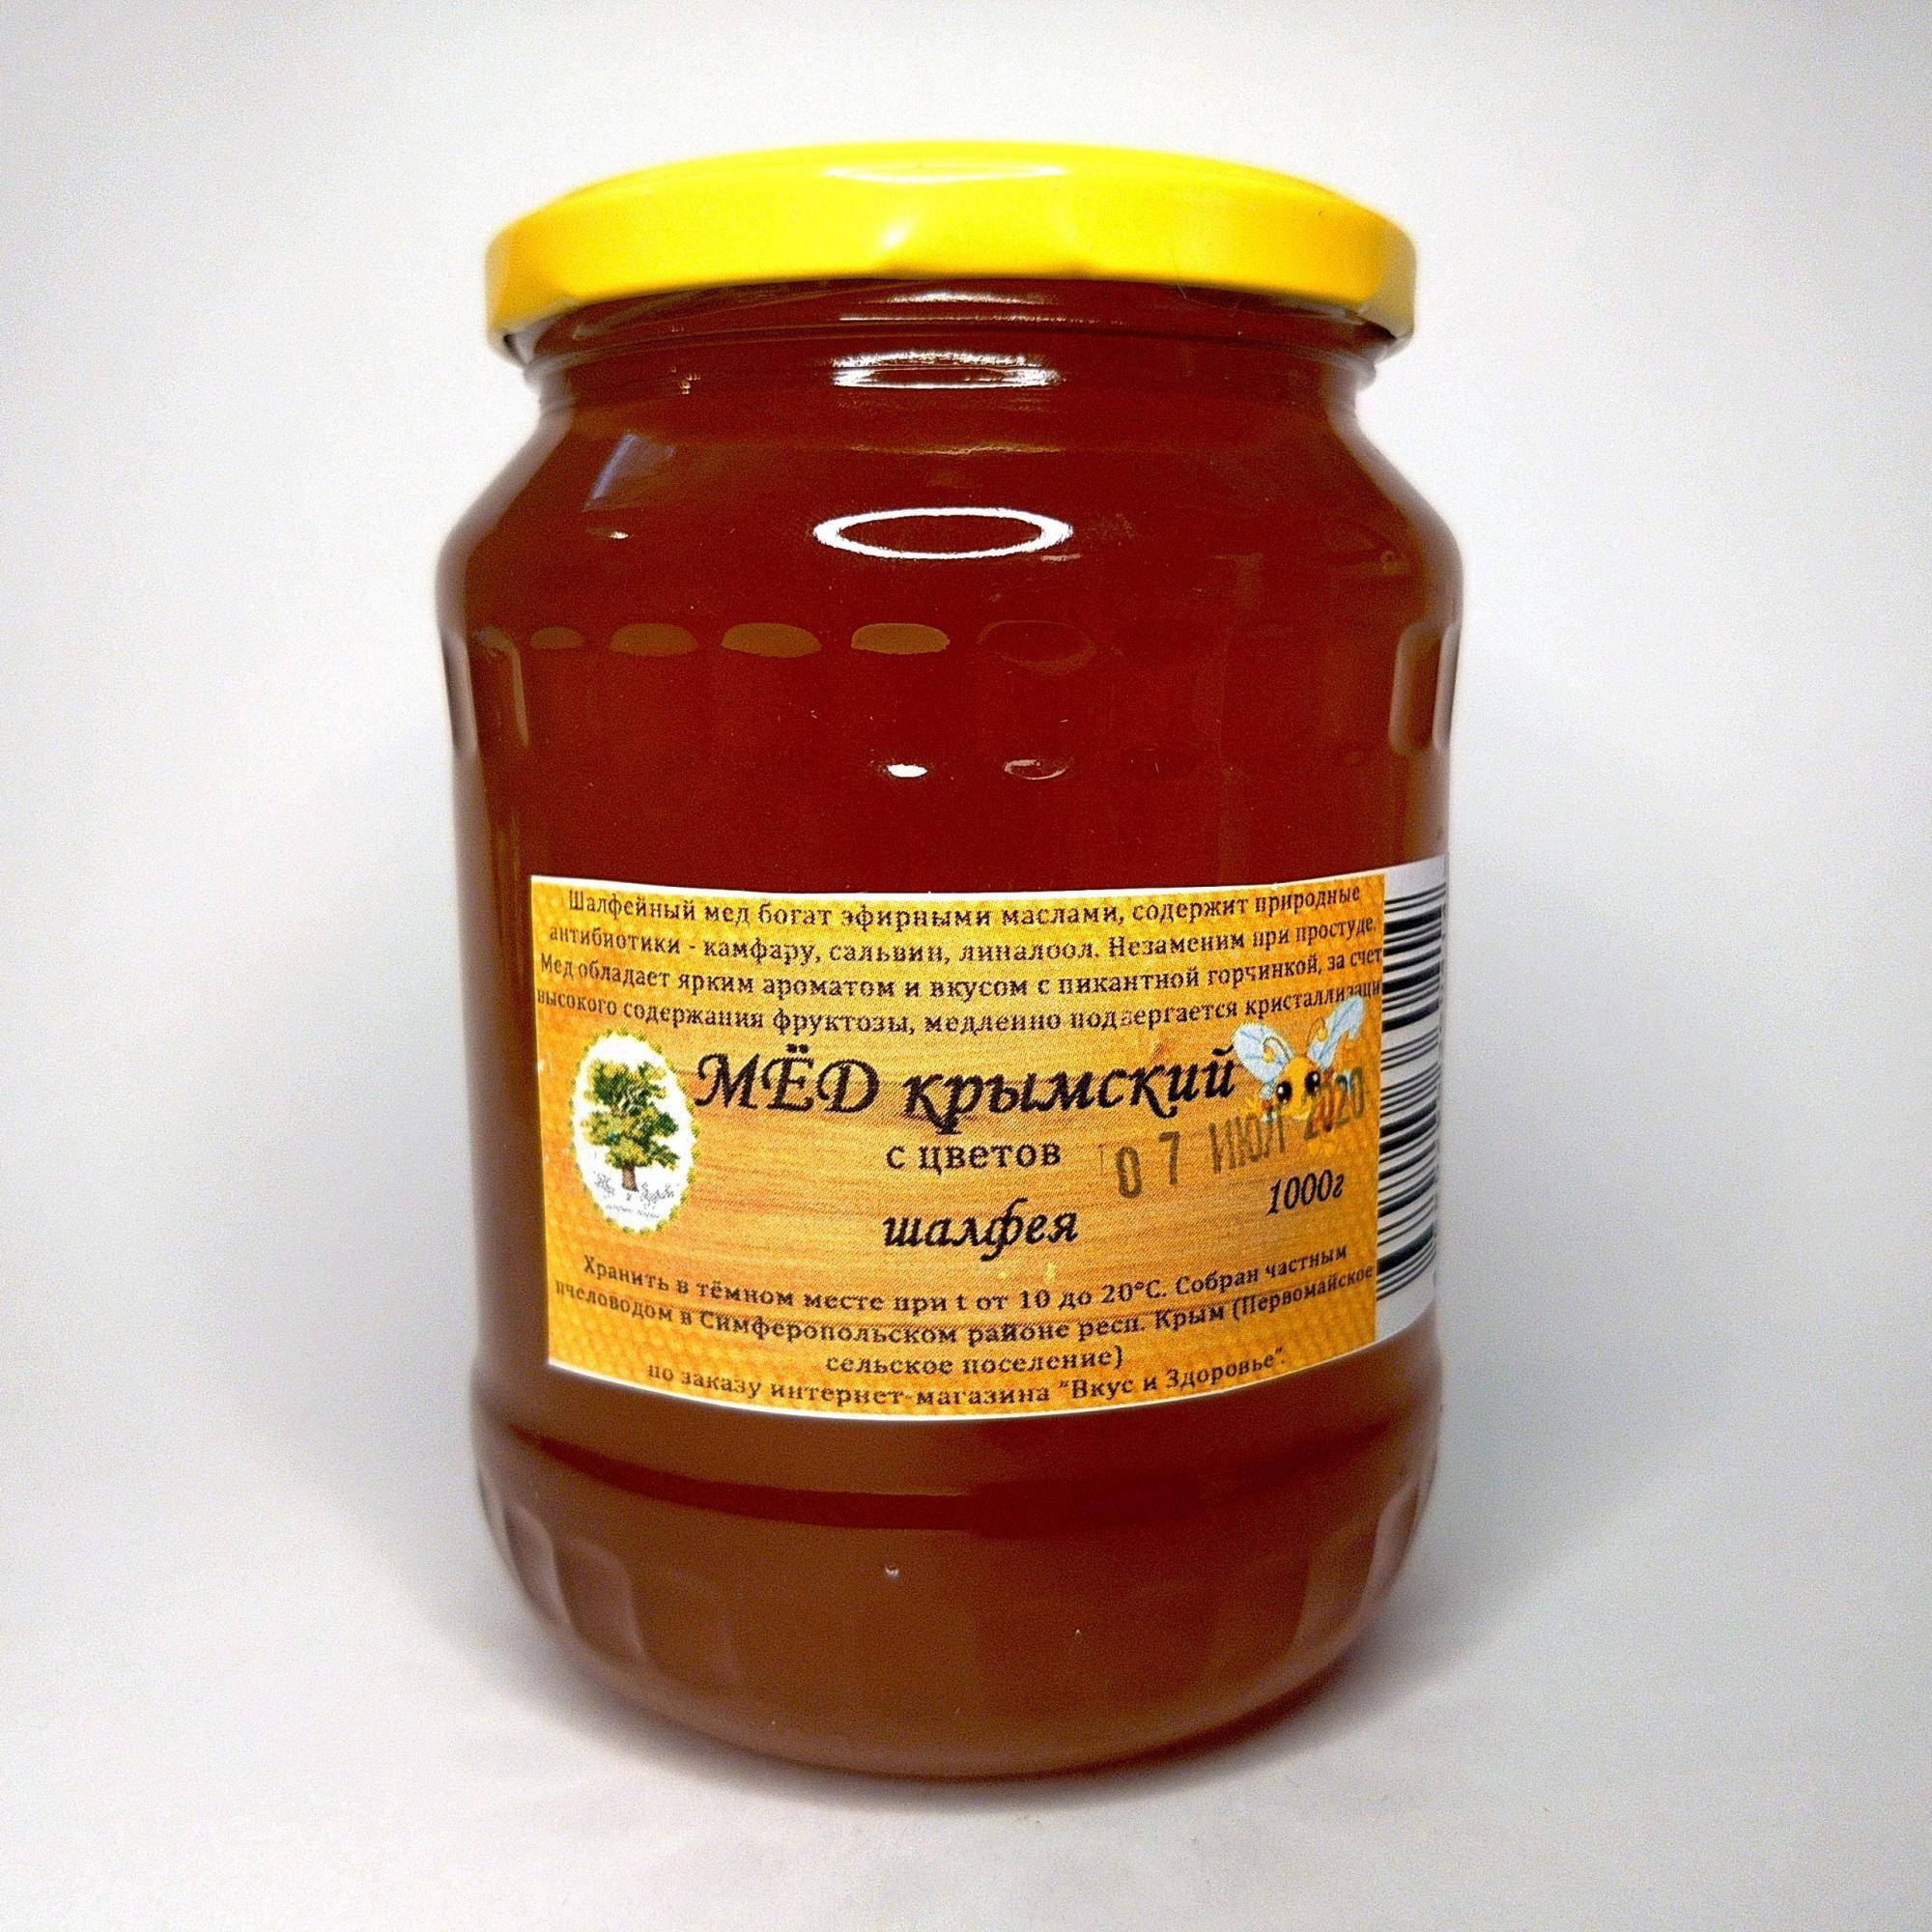 Шалфейный мед и все его особенности - продукция пчеловодства | описание, советы, отзывы, фото и видео